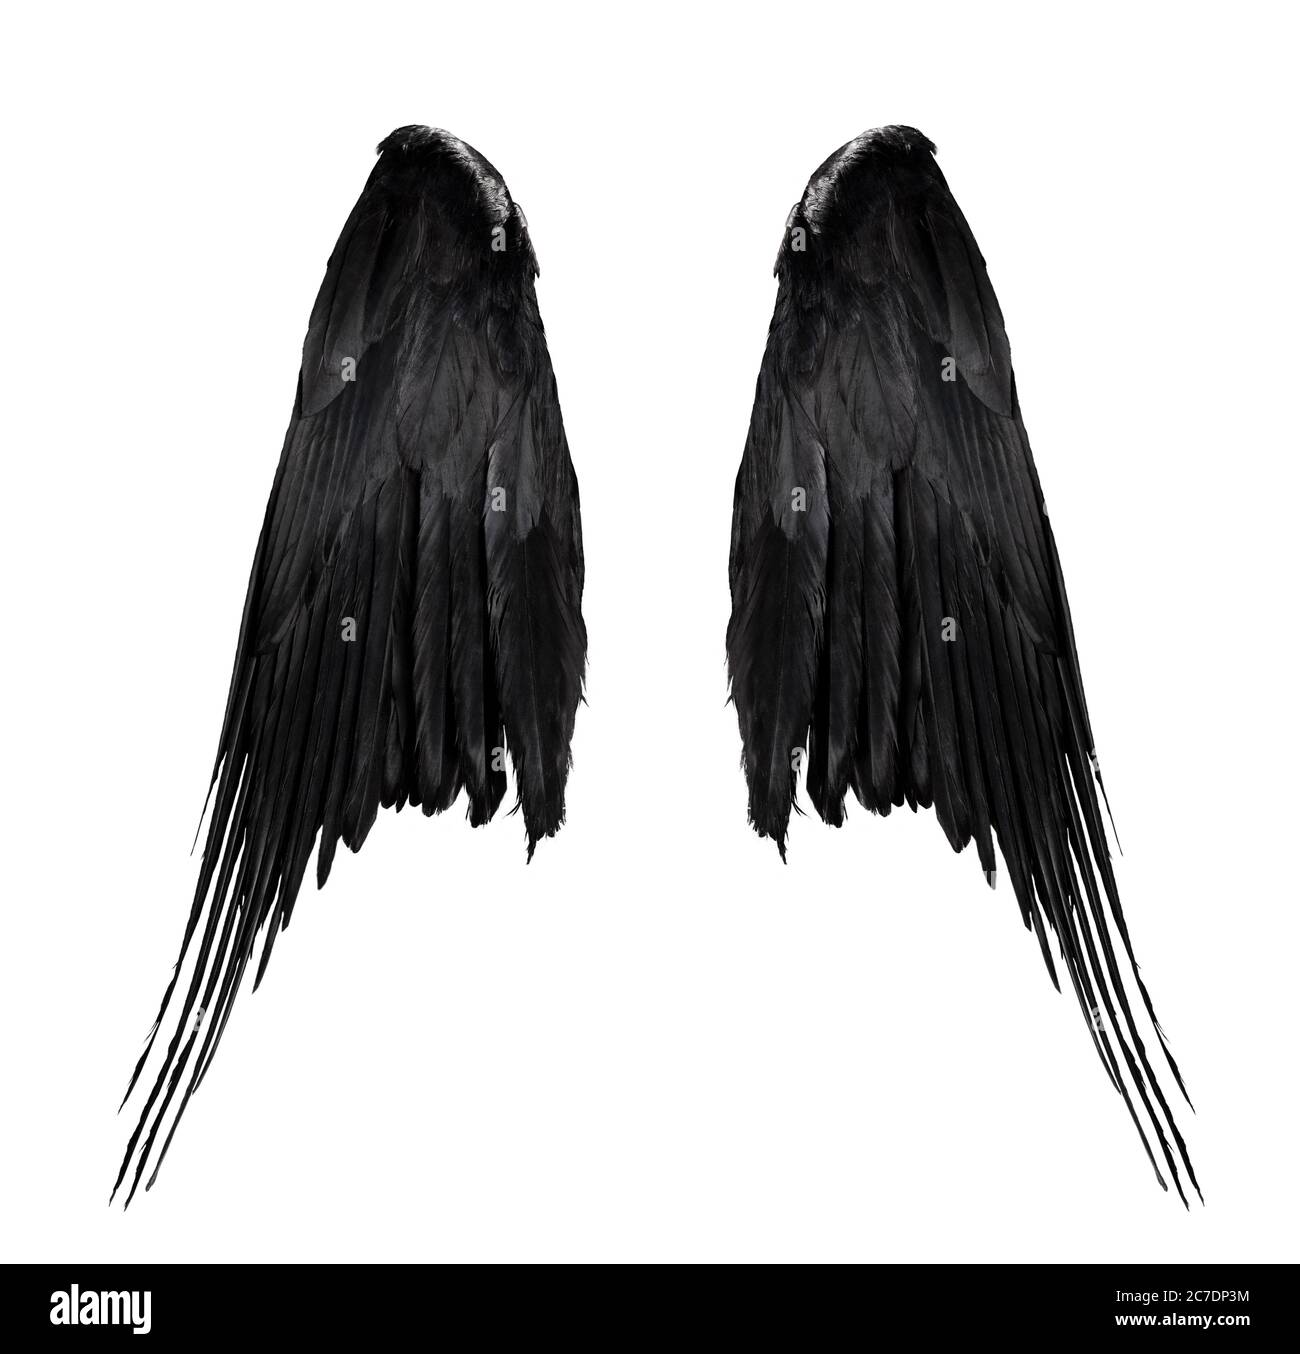 due grandi ali nere corvate con grandi piume isolate su sfondo bianco, closeup Foto Stock